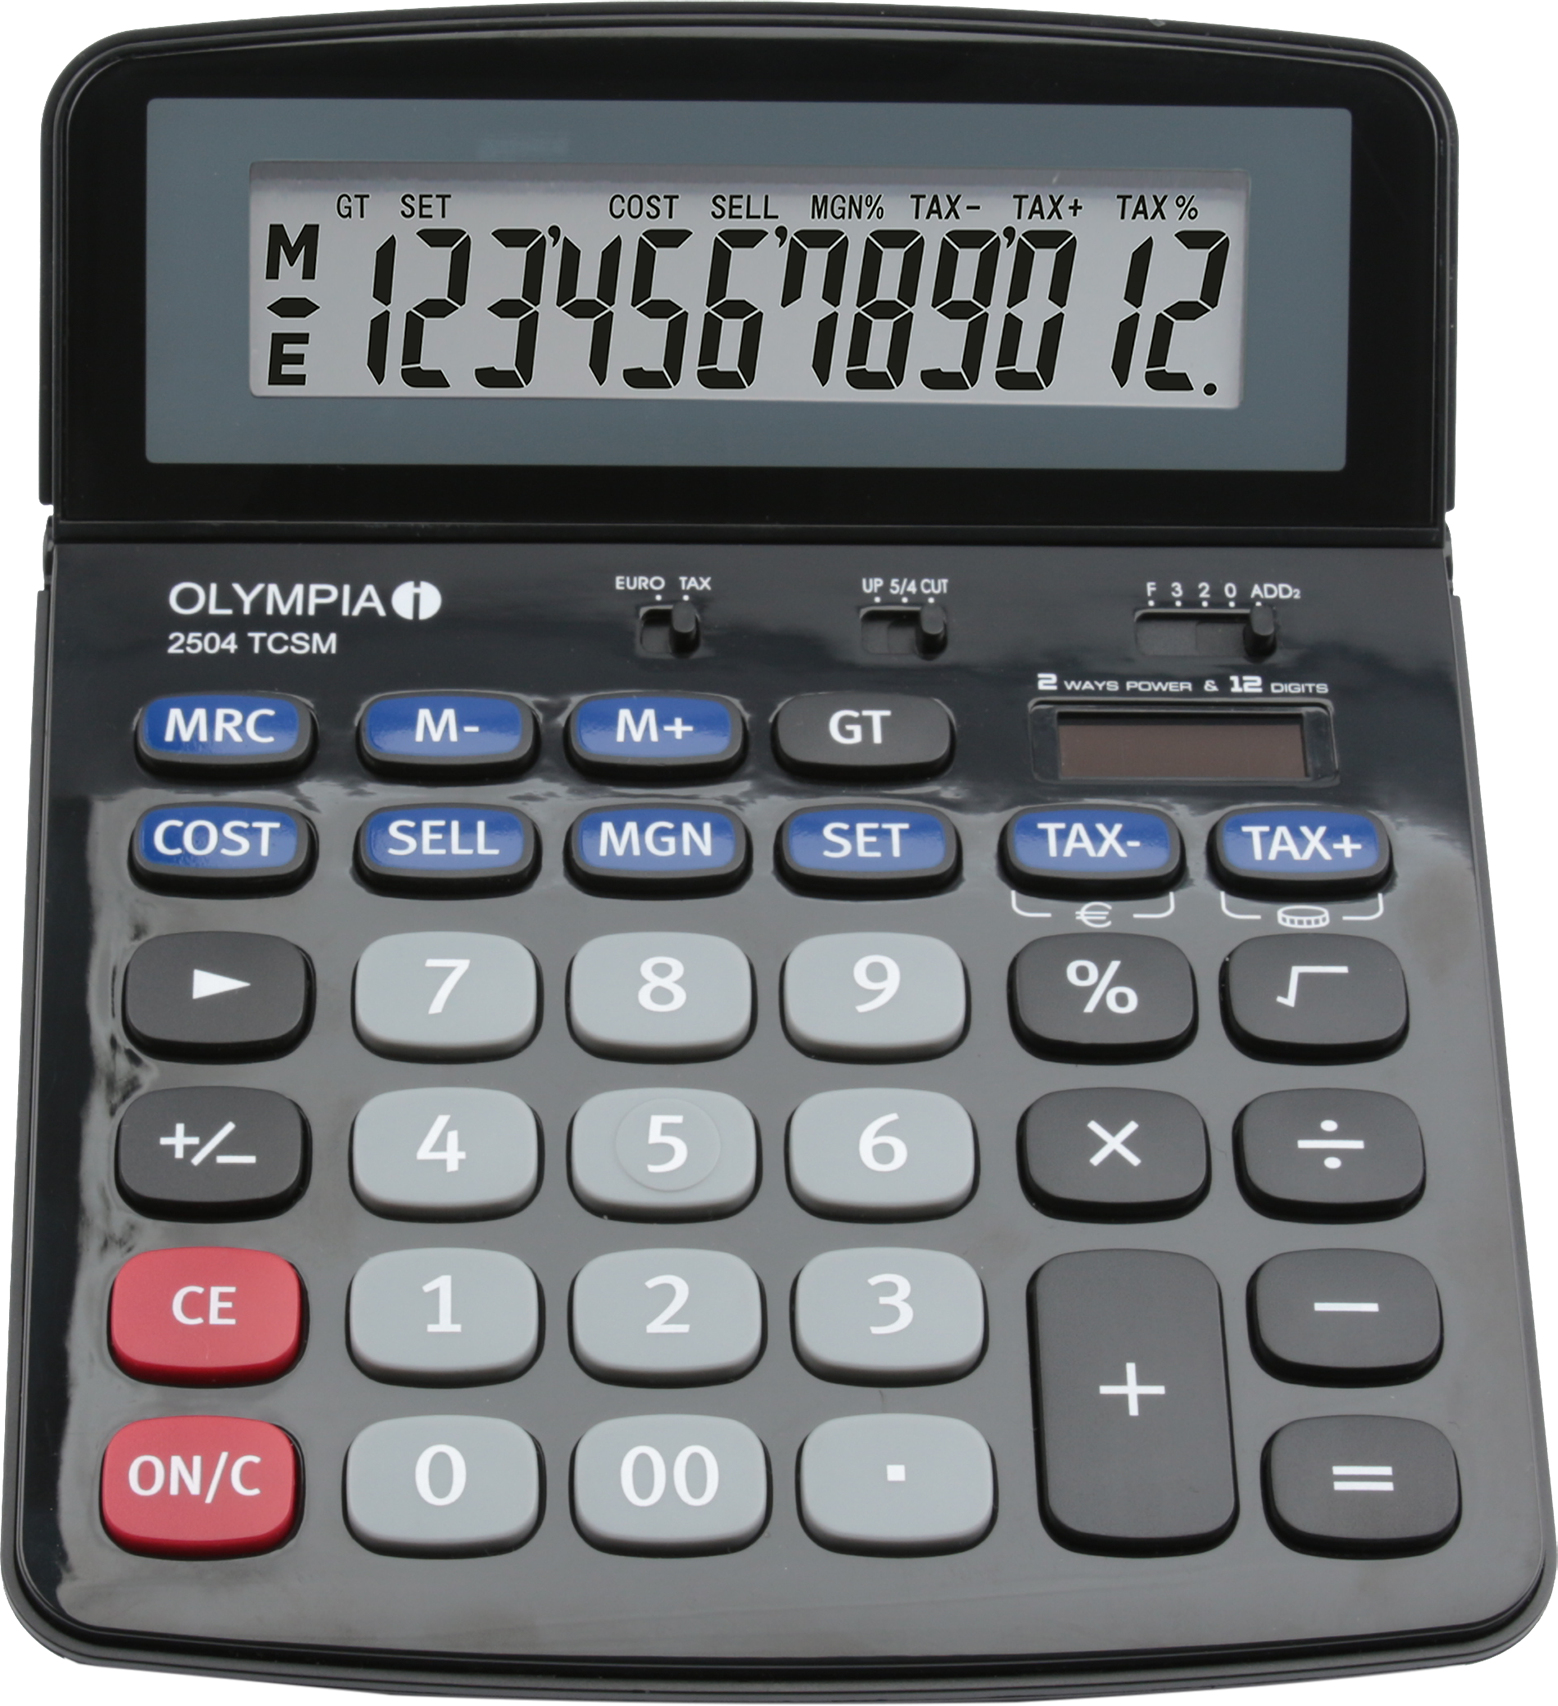 Olympia - 2504 TCSM - Taschenrechner - 12-stellige Anzeige -schwarz